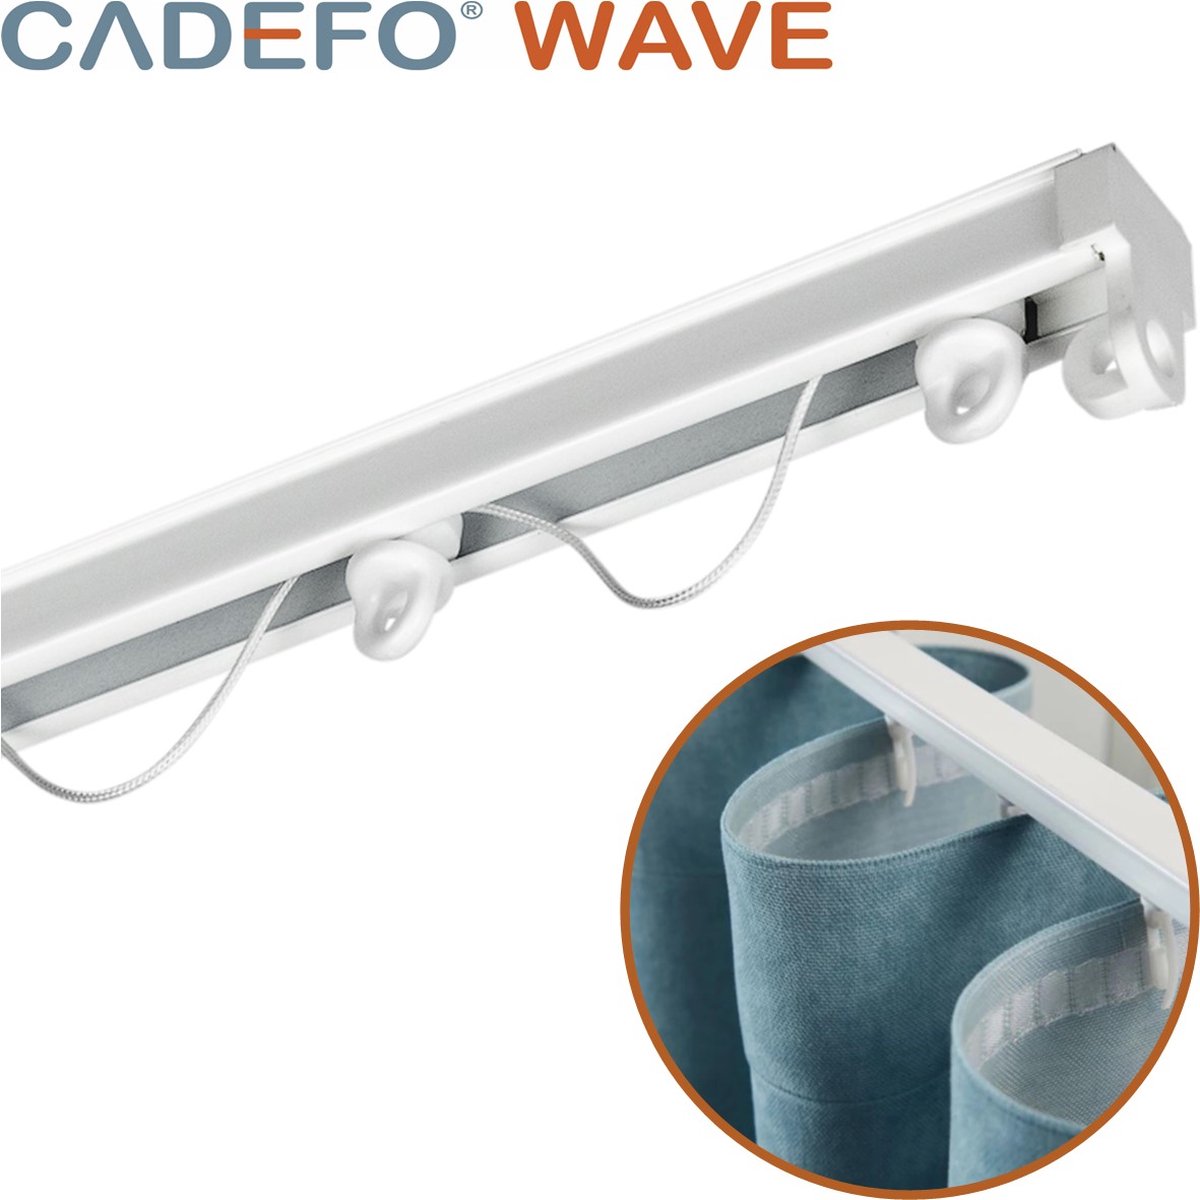 CADEFO WAVE (551 - 600 cm) Gordijnrails - Compleet op maat! - UIT 1 STUK - Leverbaar tot 6 meter - Plafondbevestiging - Lengte 575 cm